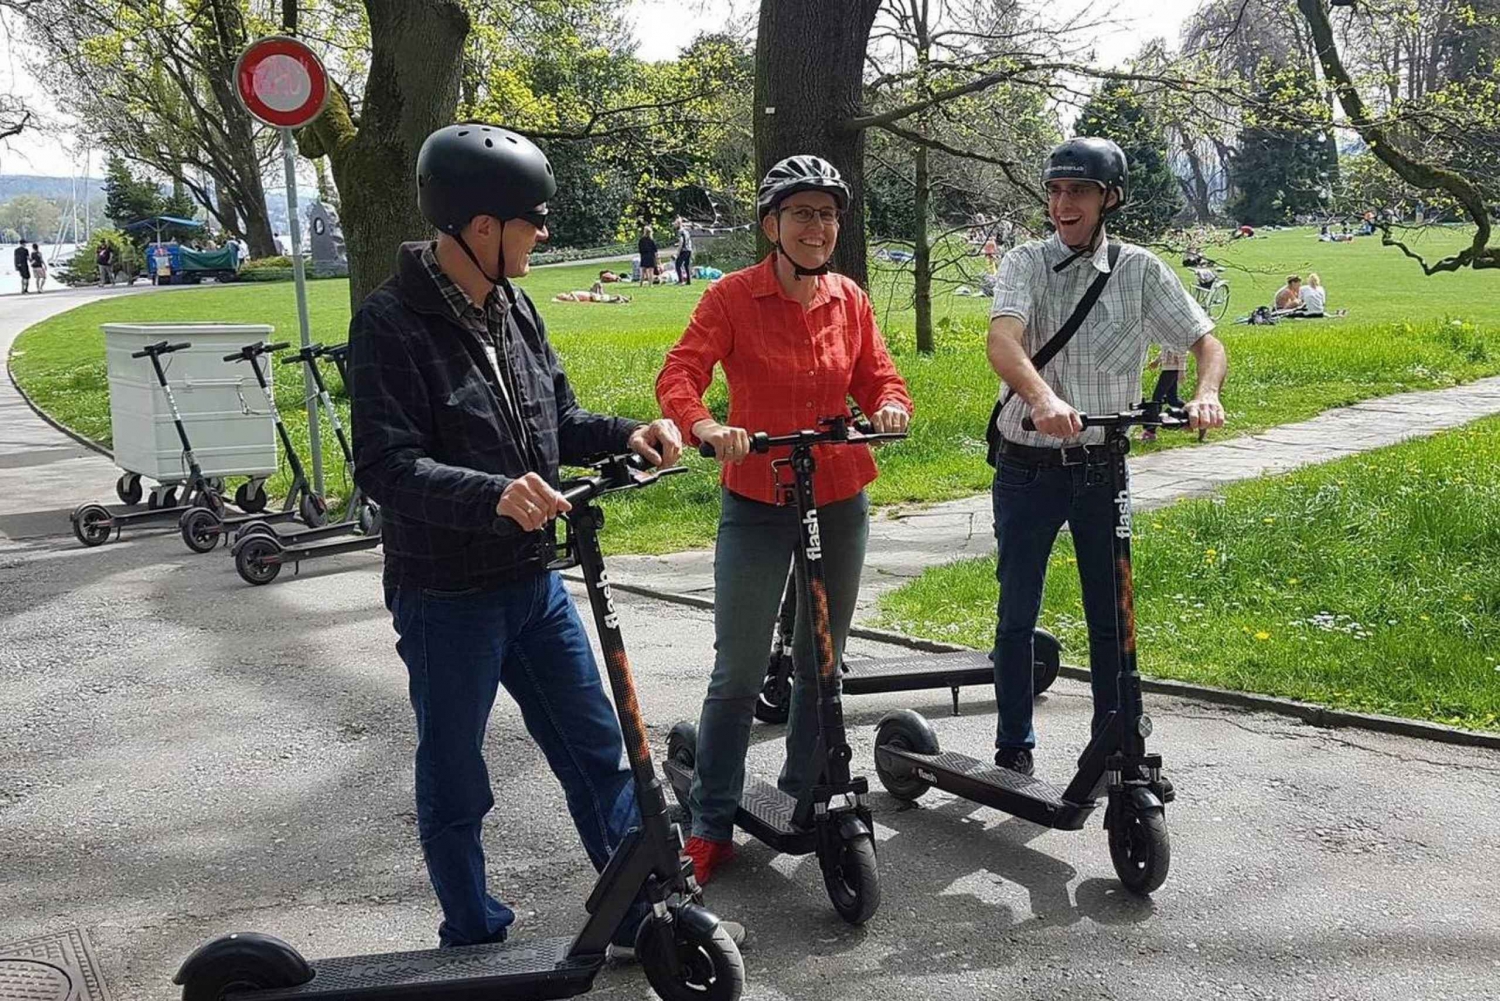 Krakow: 2-Hour Jewish Quarter E-scooter Tour